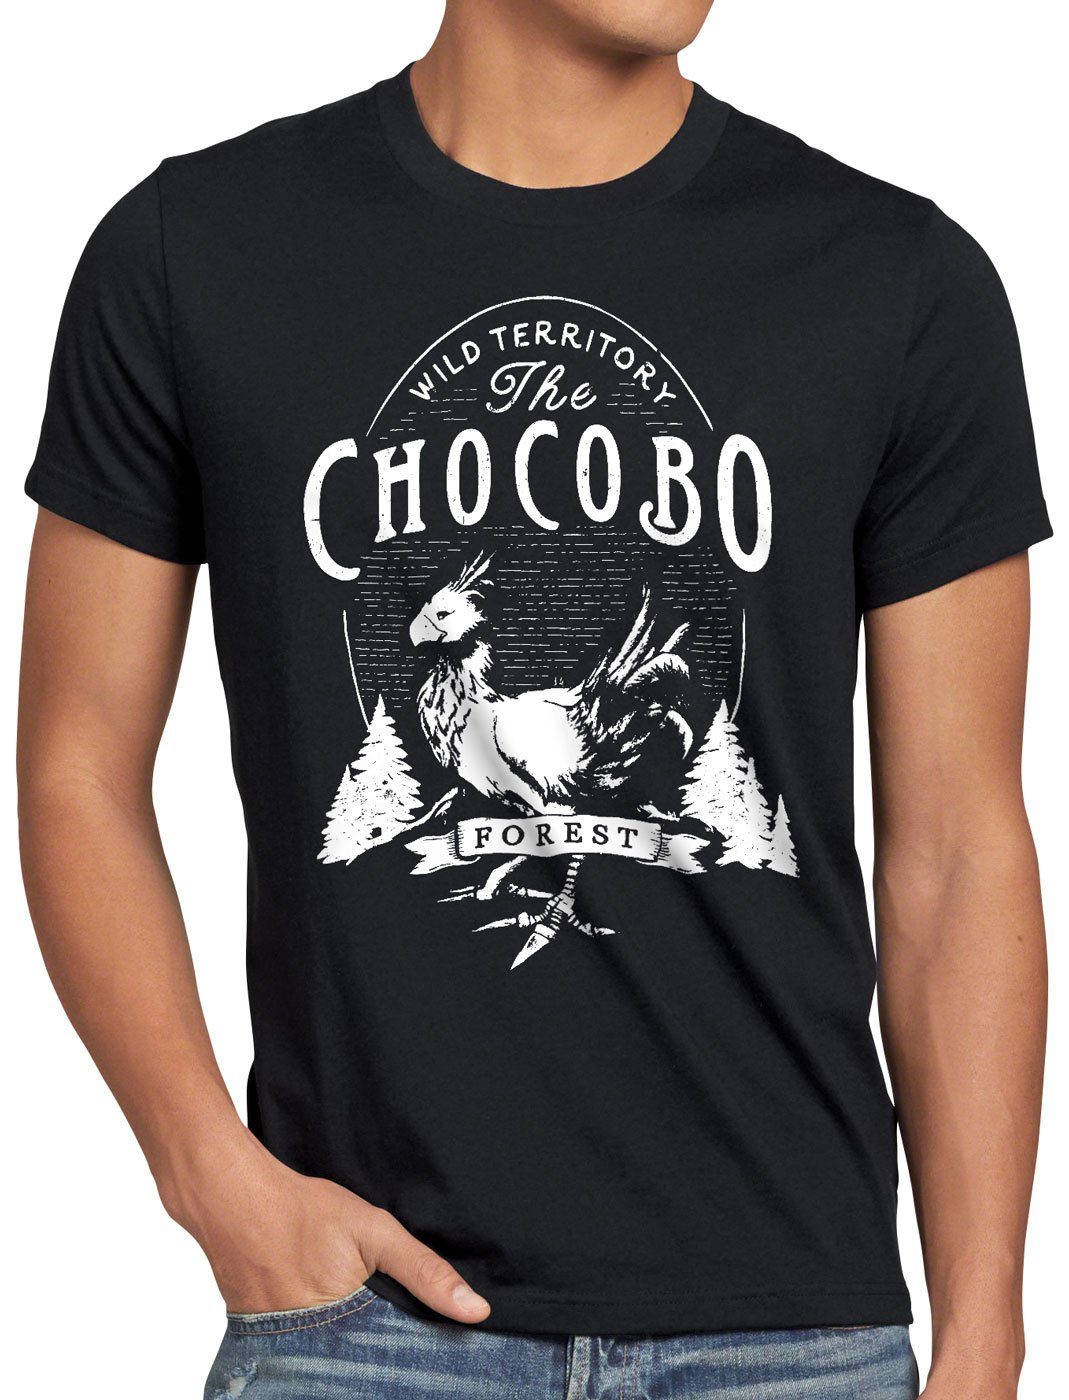 Herren VII schwarz Chocobo Print-Shirt Wild style3 T-Shirt Rollenspiel final